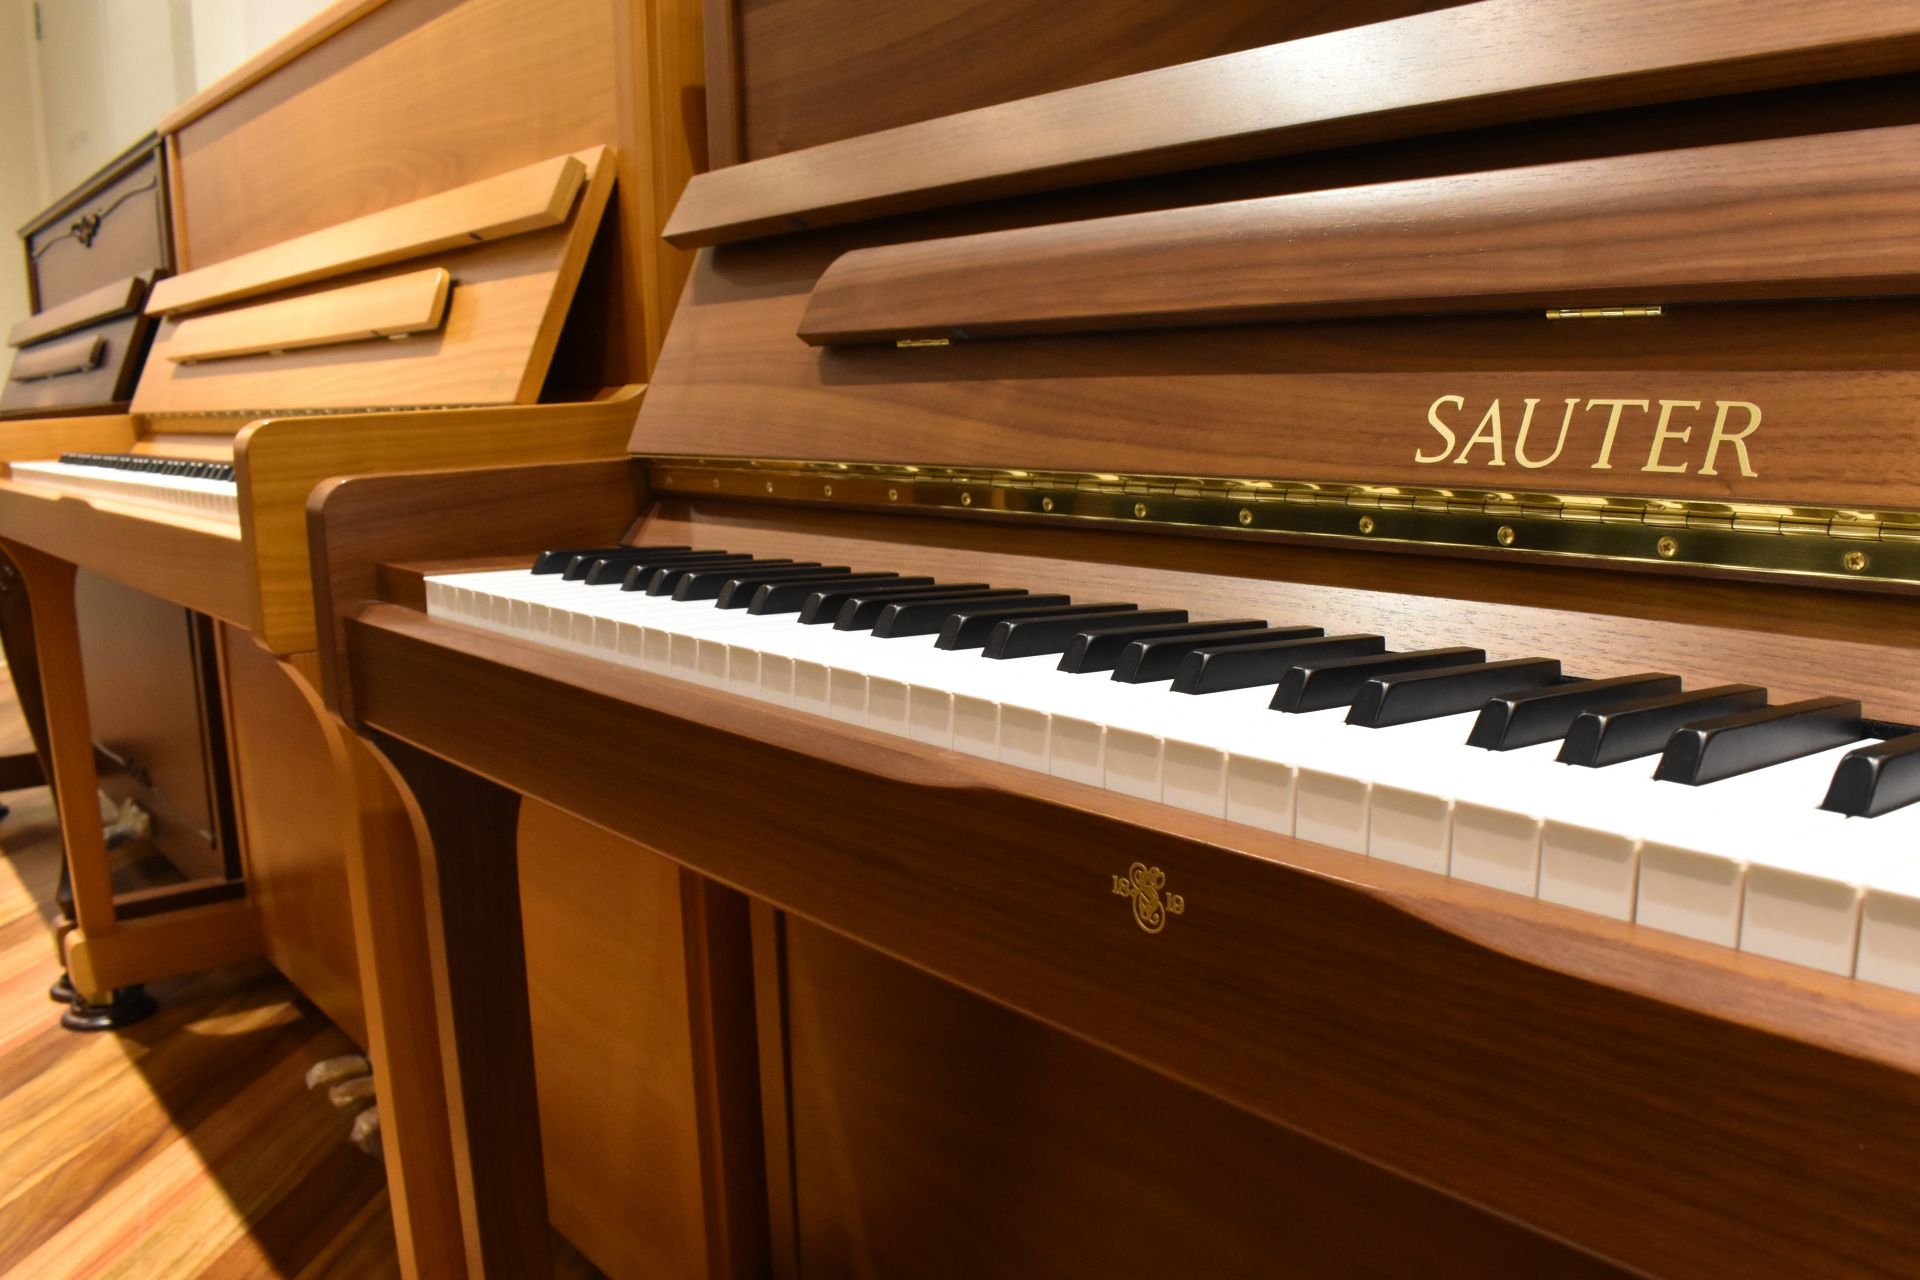 [https://www.shimamura.co.jp/originalbrand/import-agent/sauter/index.html::title=] 当社は、国内において『ザウター正規日本総代理店』として皆様へザウターピアノの魅力をご案内しております。また、当店は、九州では唯一の展示 […]